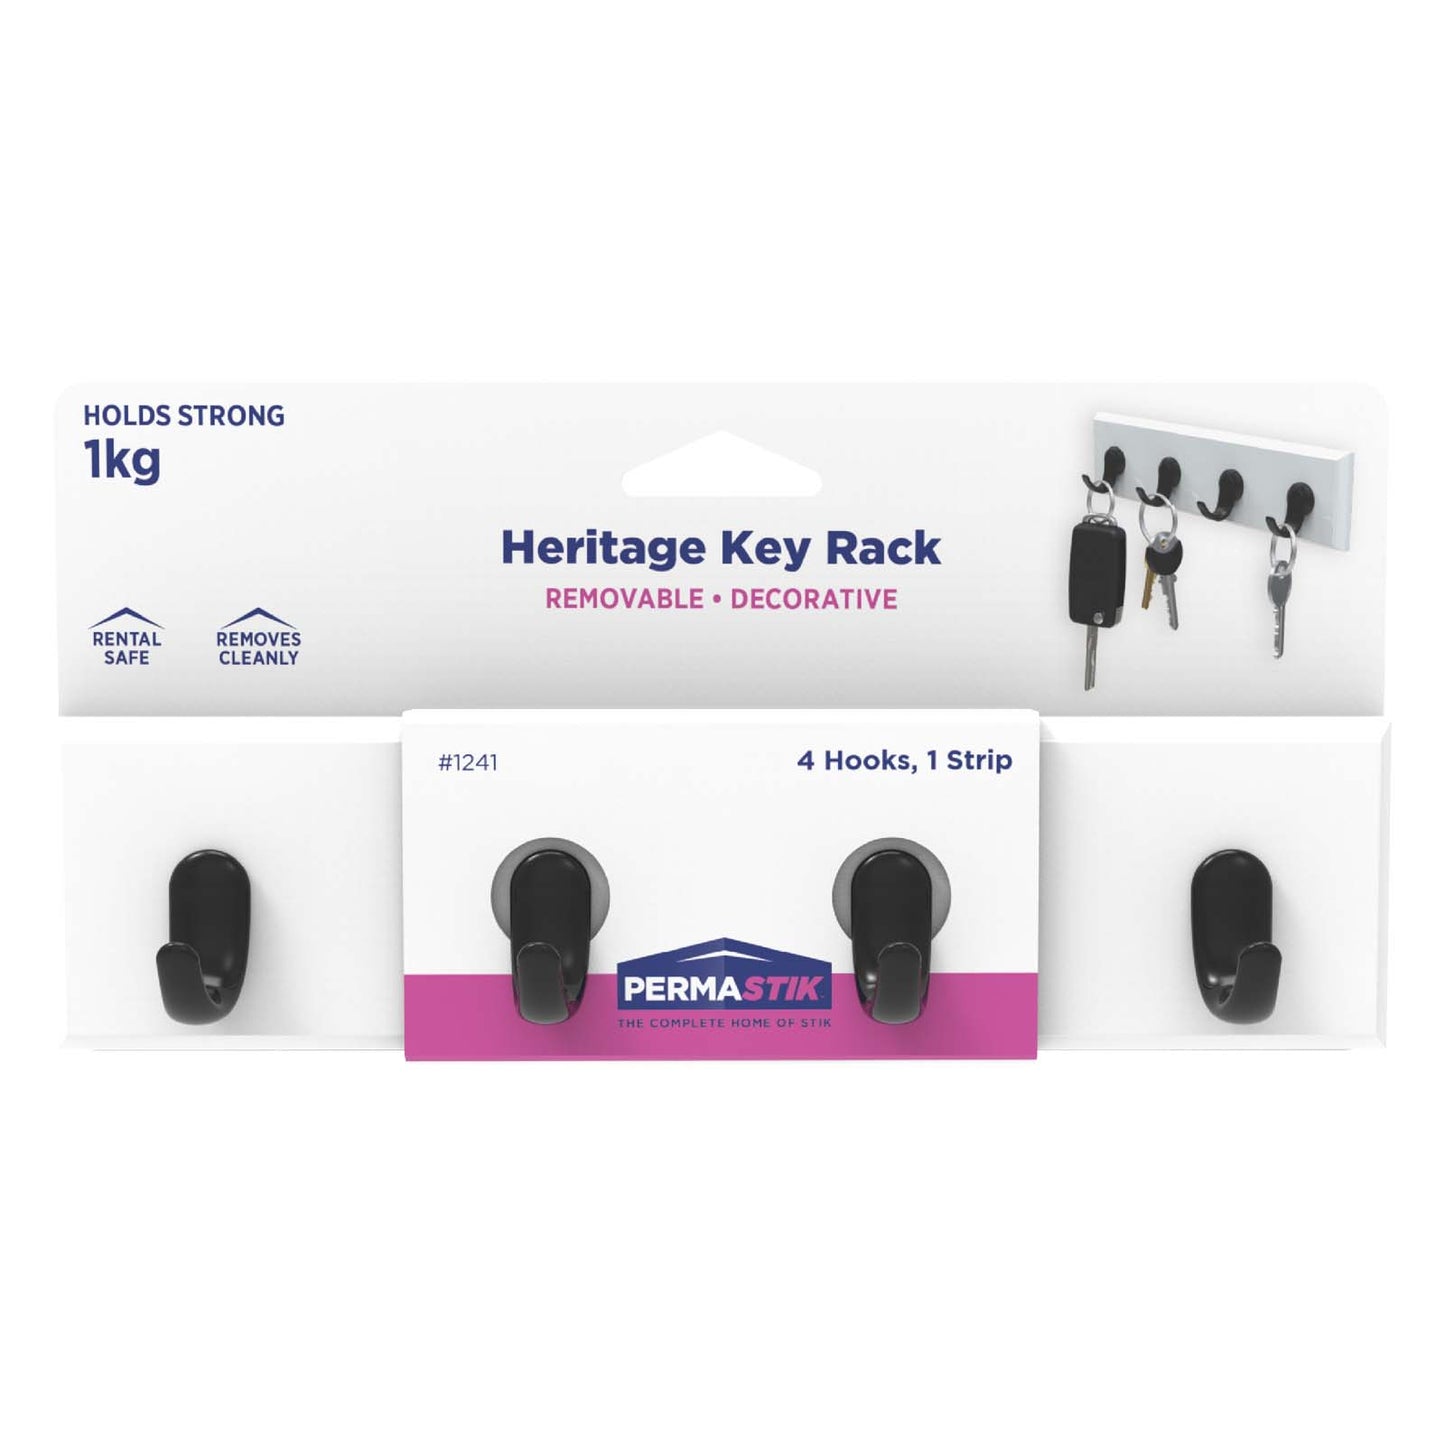 Heritage Key Rack